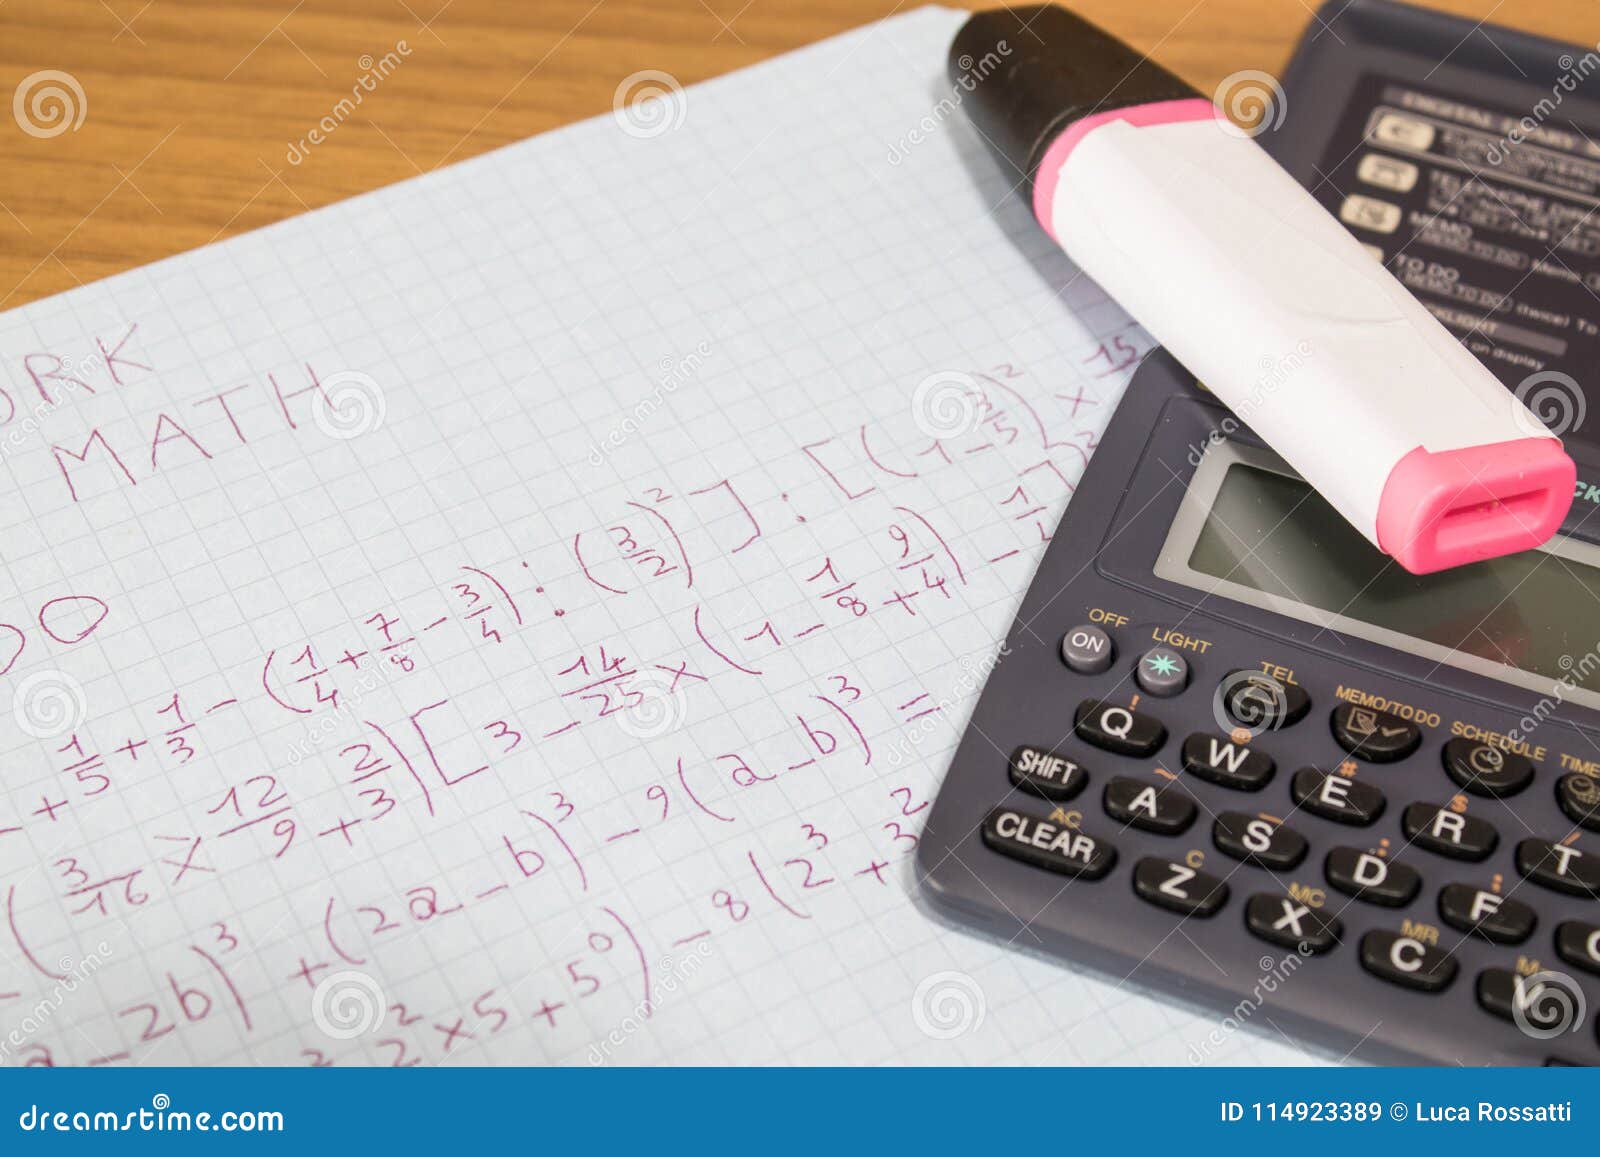 maths homework calculator